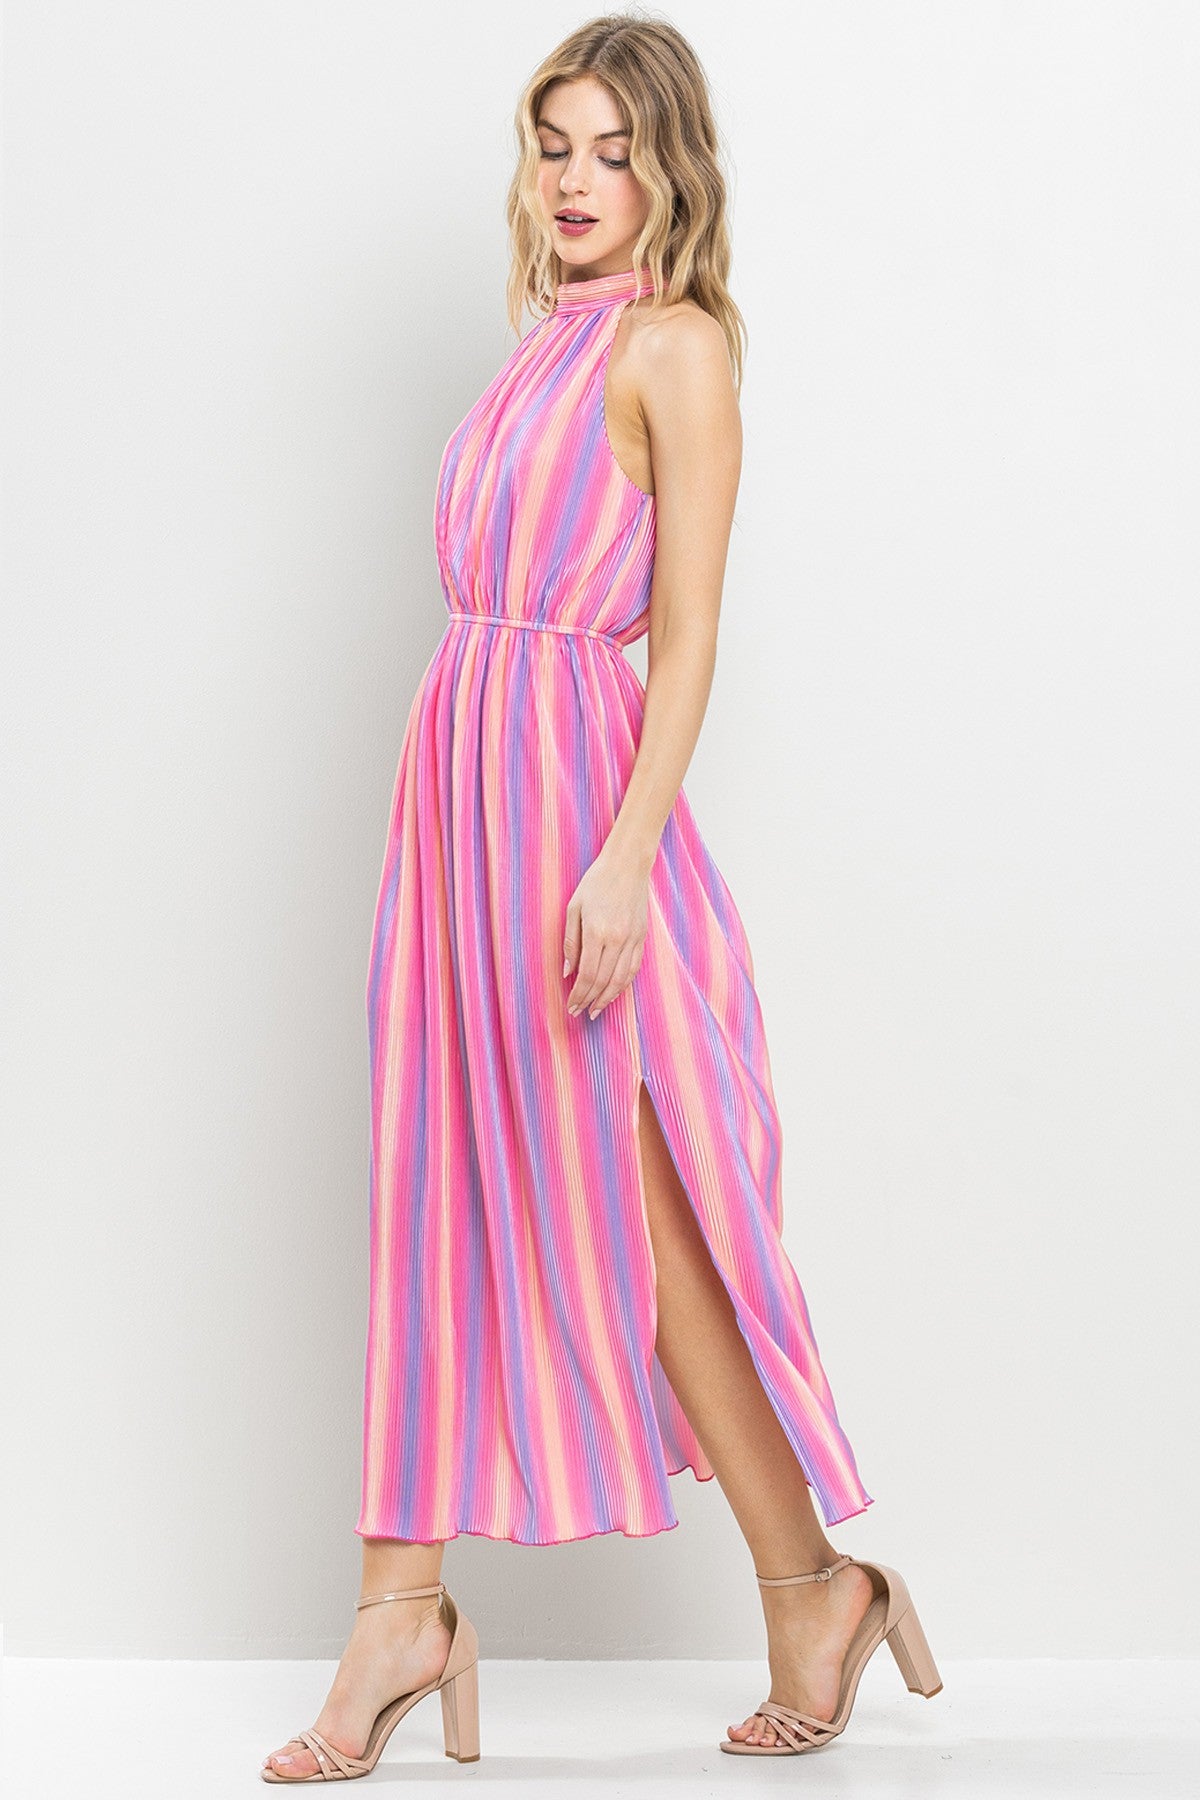 Apparel- TCEC Multi Color Pleated Dress